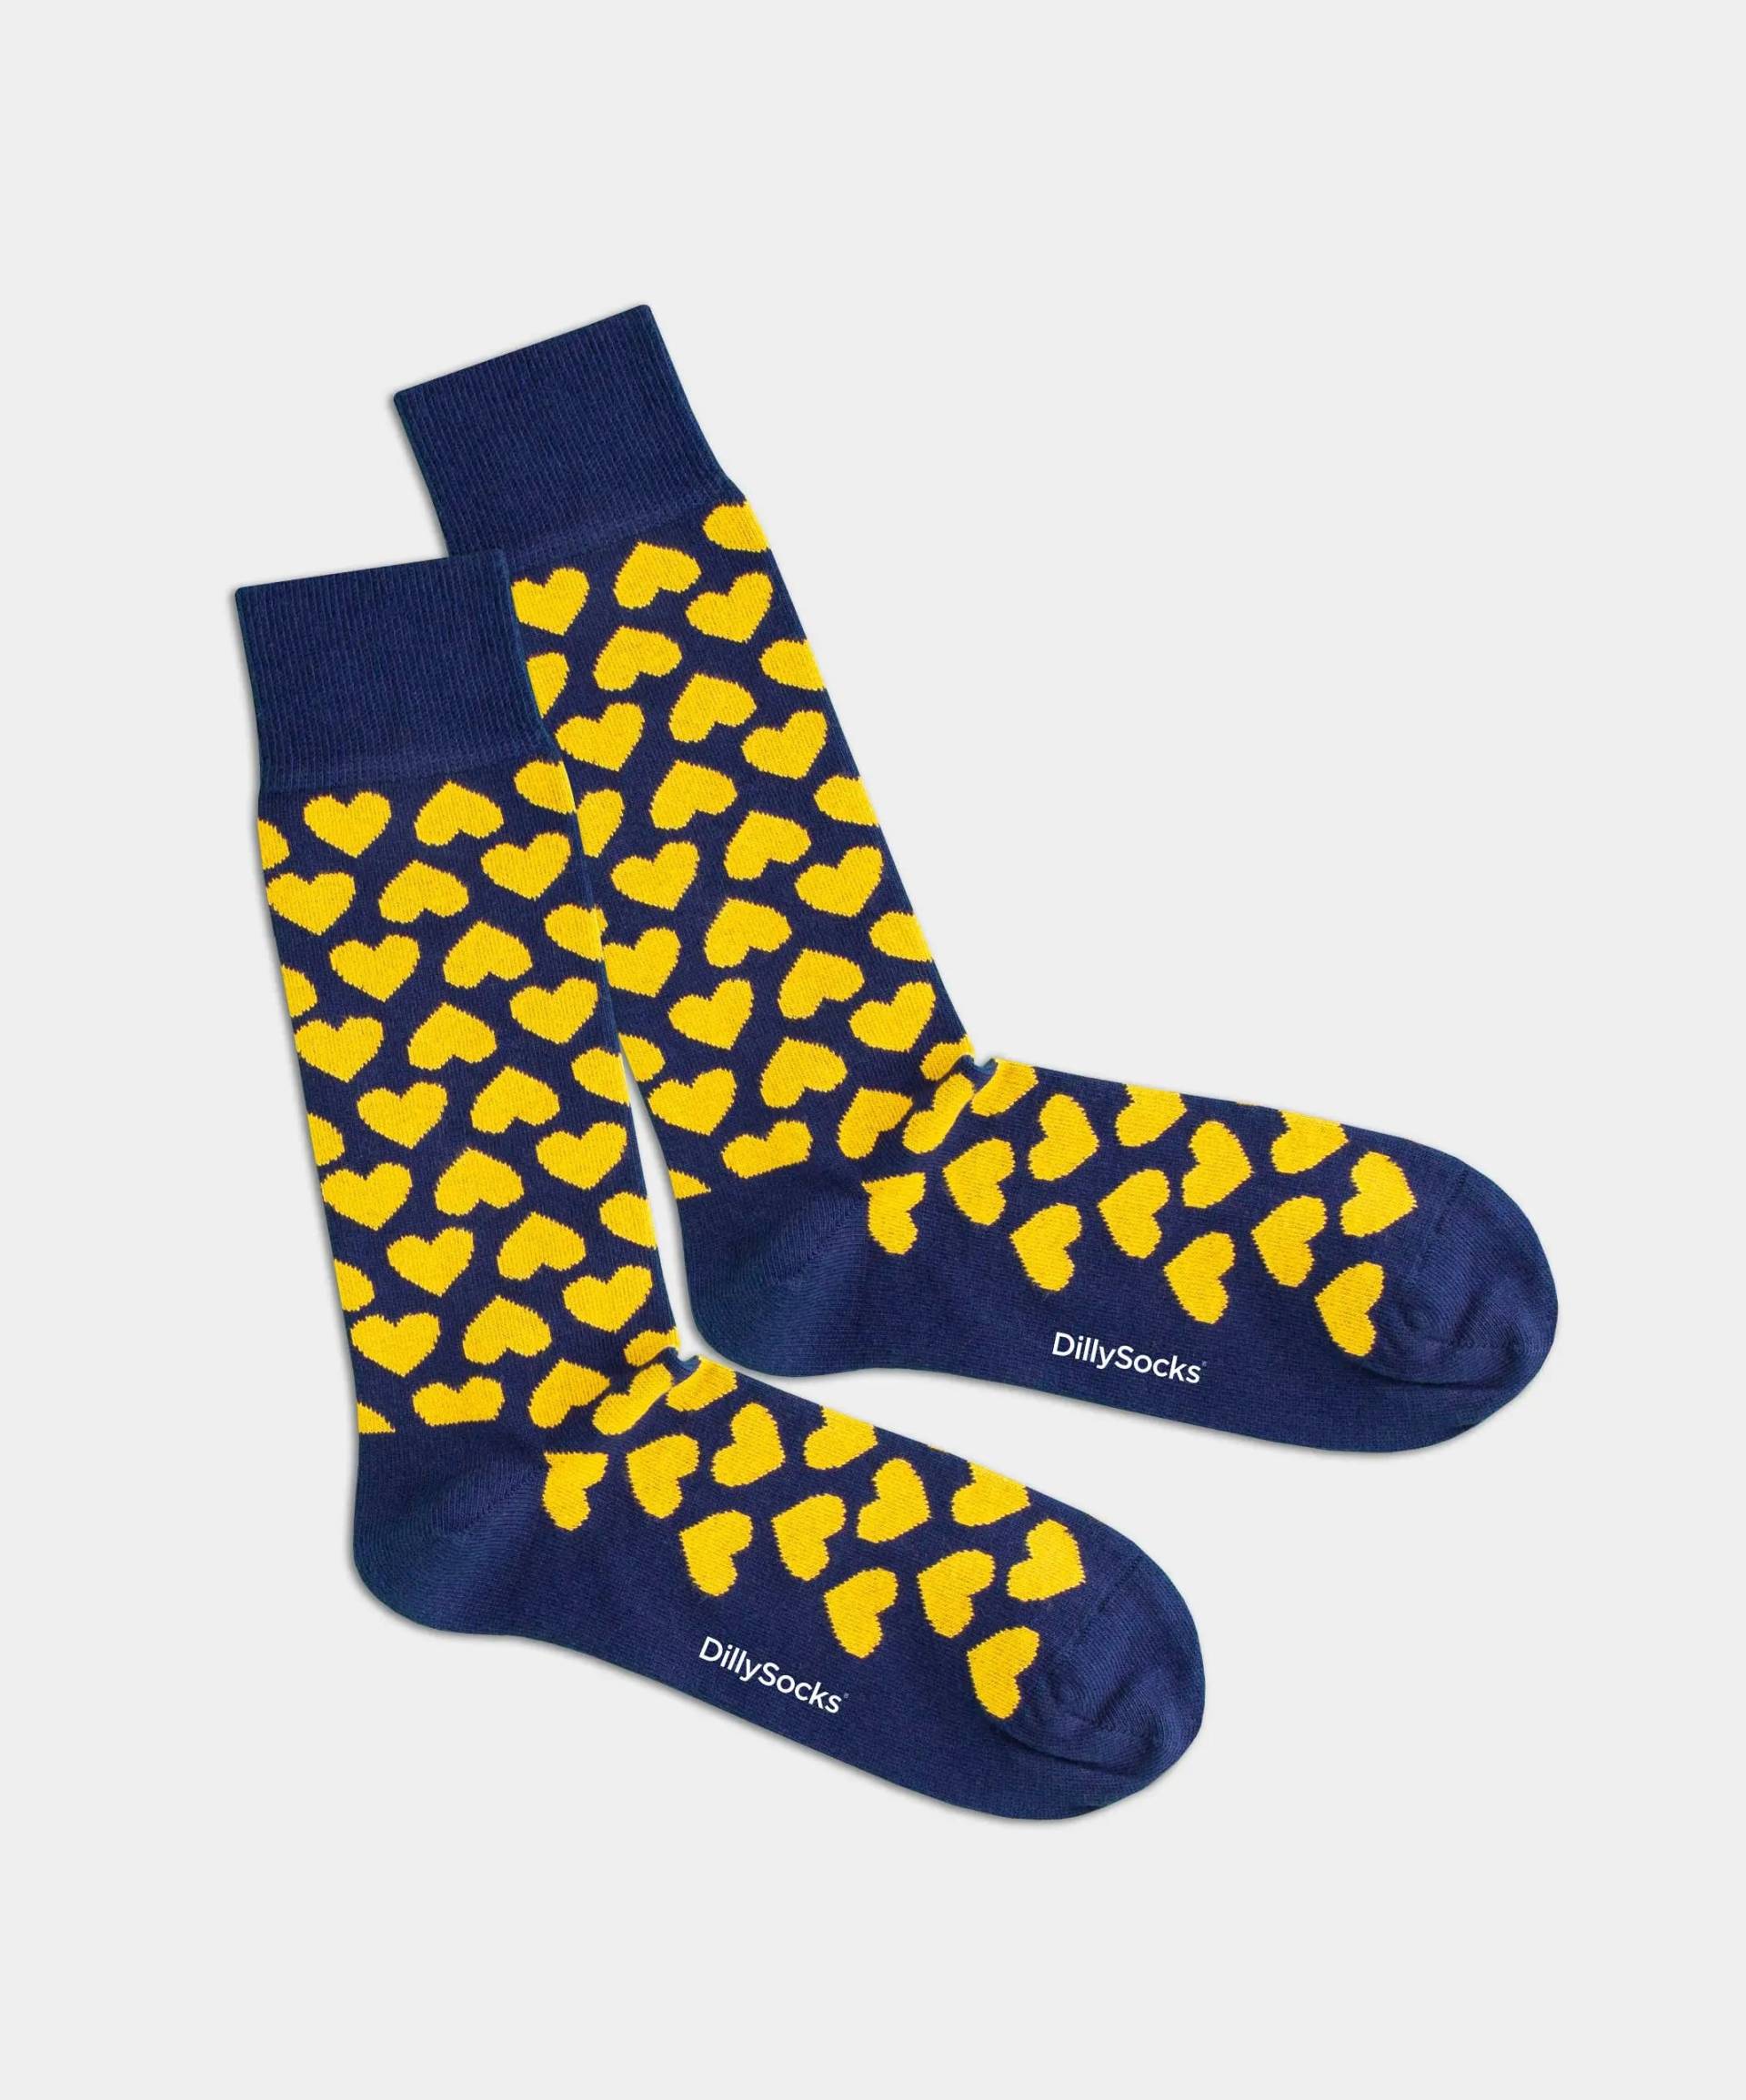 - Socken in Gelb mit Herz Motiv/Muster von DillySocks